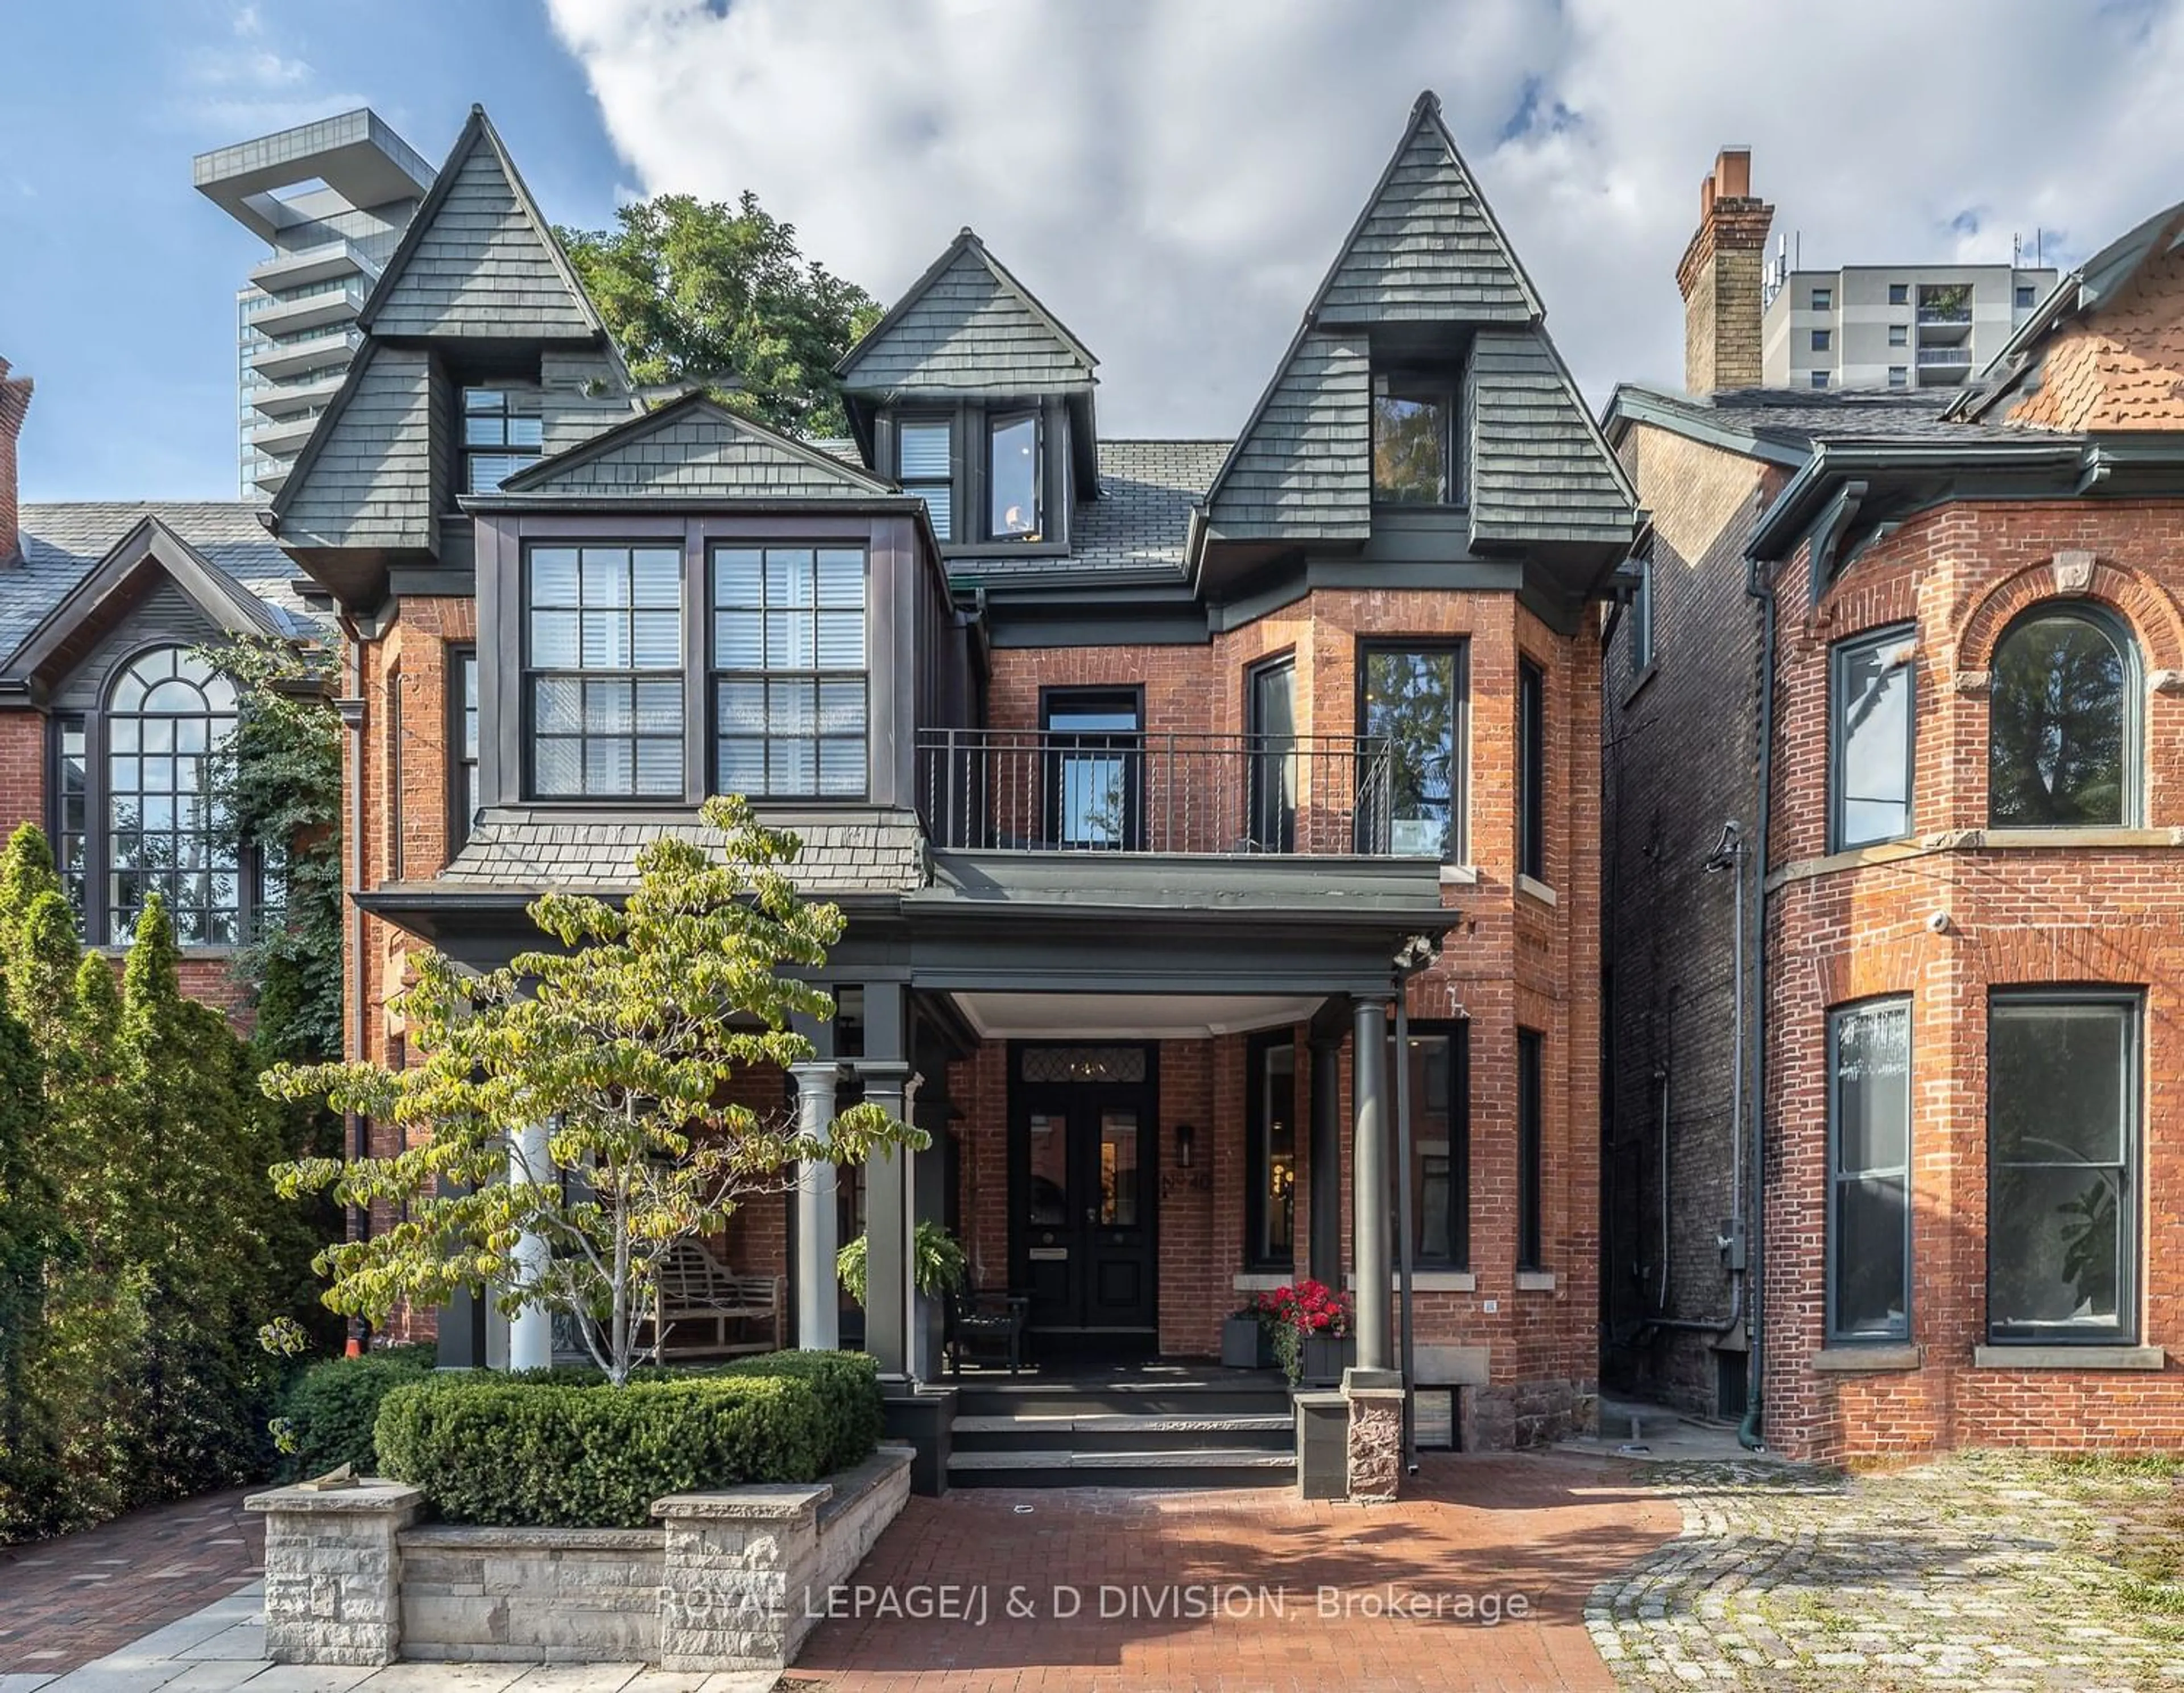 Home with brick exterior material for 40 Bernard Ave, Toronto Ontario M5R 1R2